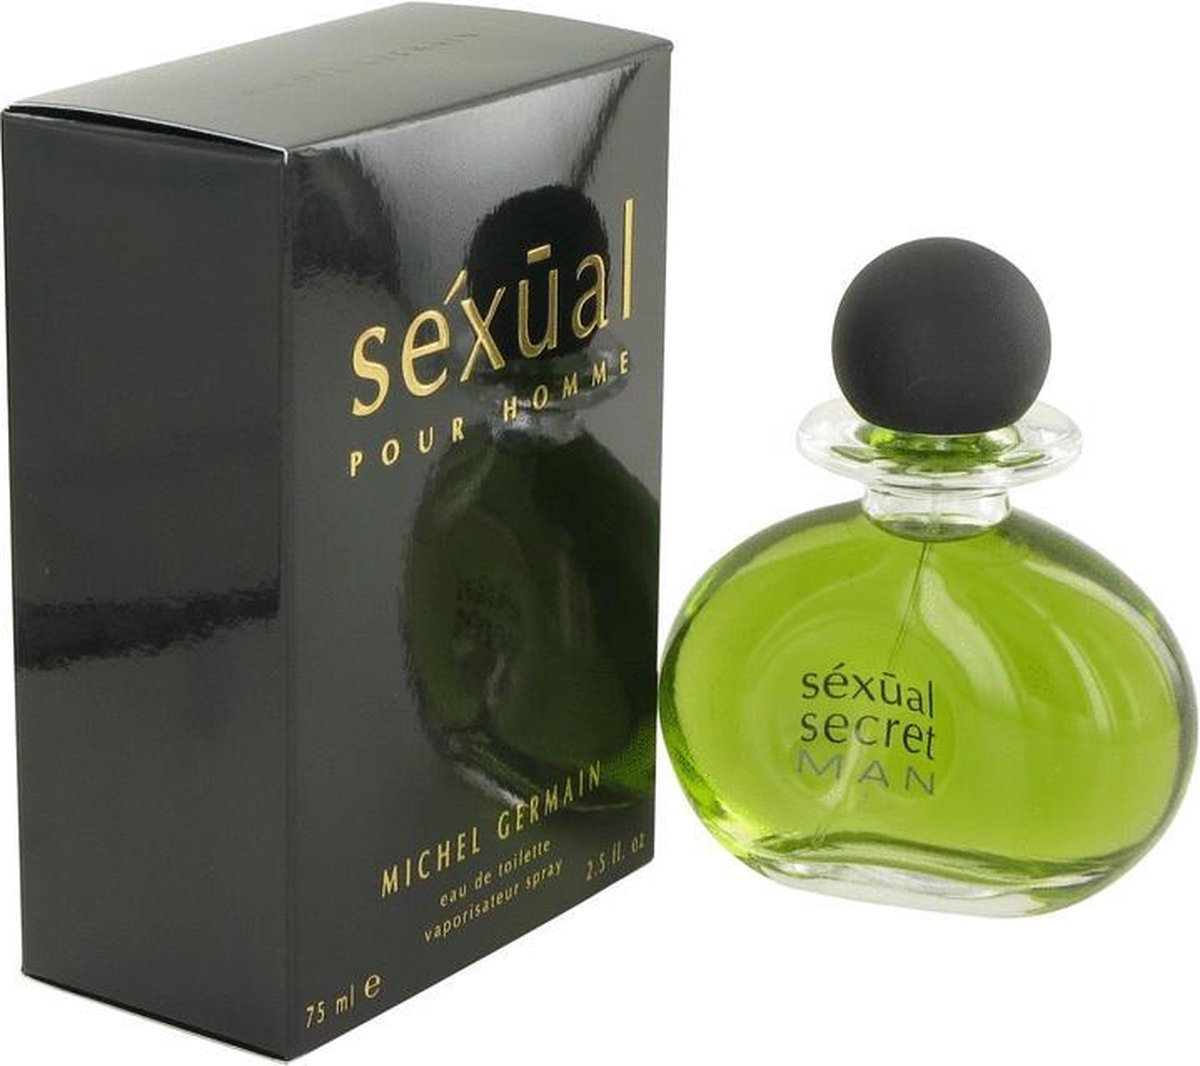 Sexual by Michel Germain 75 ml - Eau De Toilette Spray